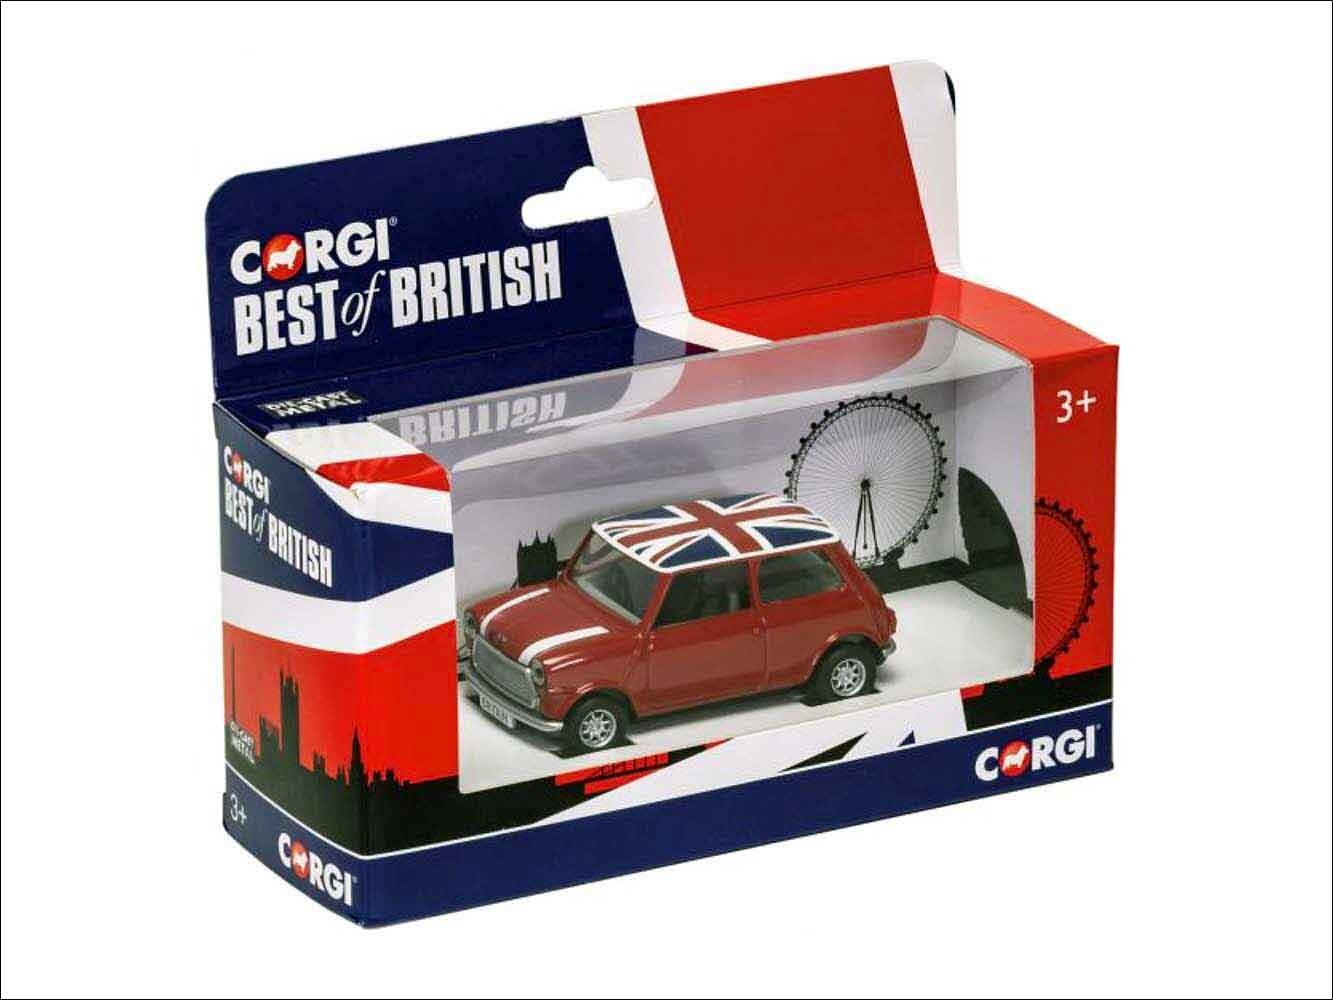 Best of British Classic Mini Red model